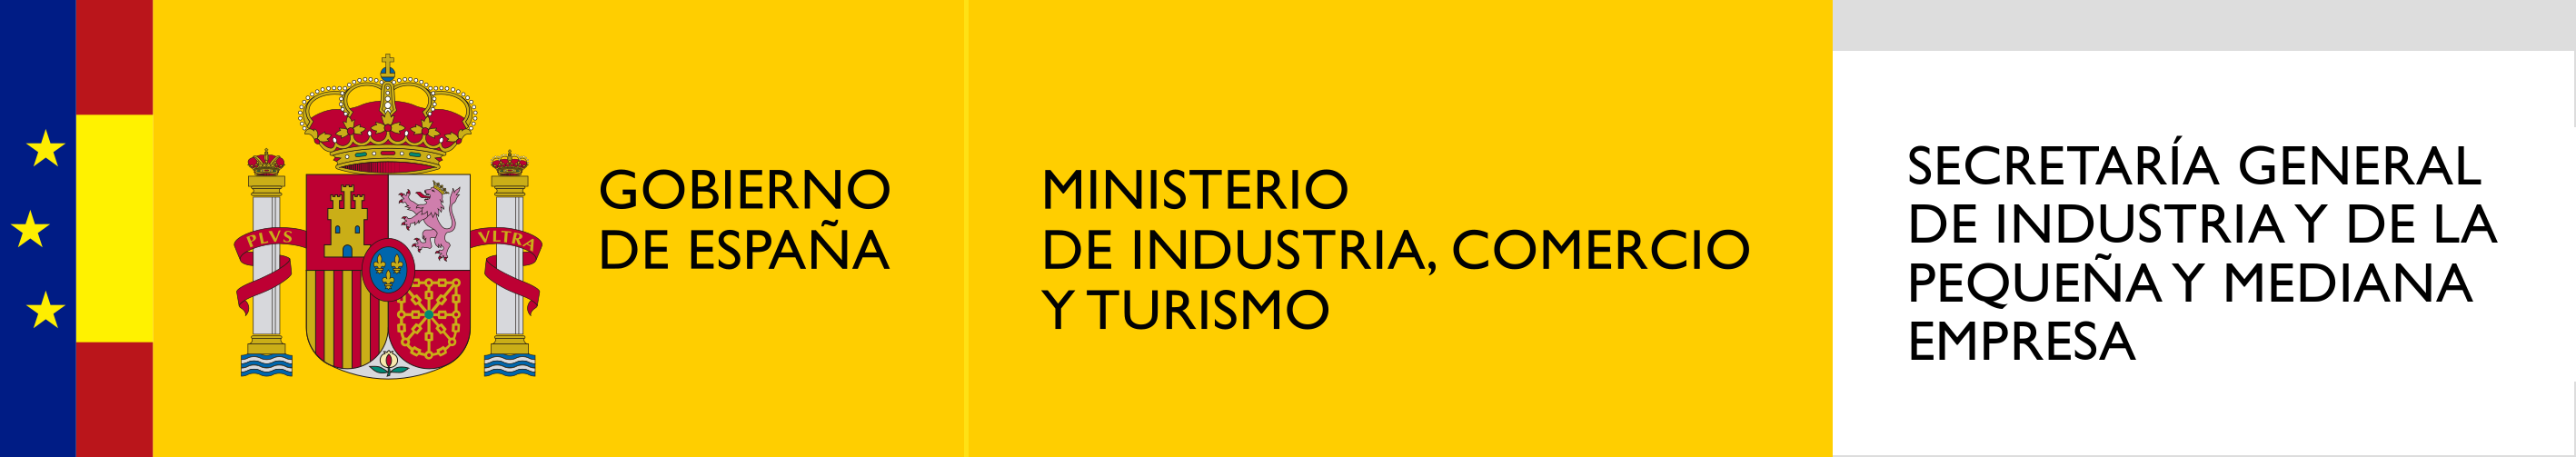  MINCOTUR - Secretaría General de Industria y de la Pequeña y Mediana Empresa